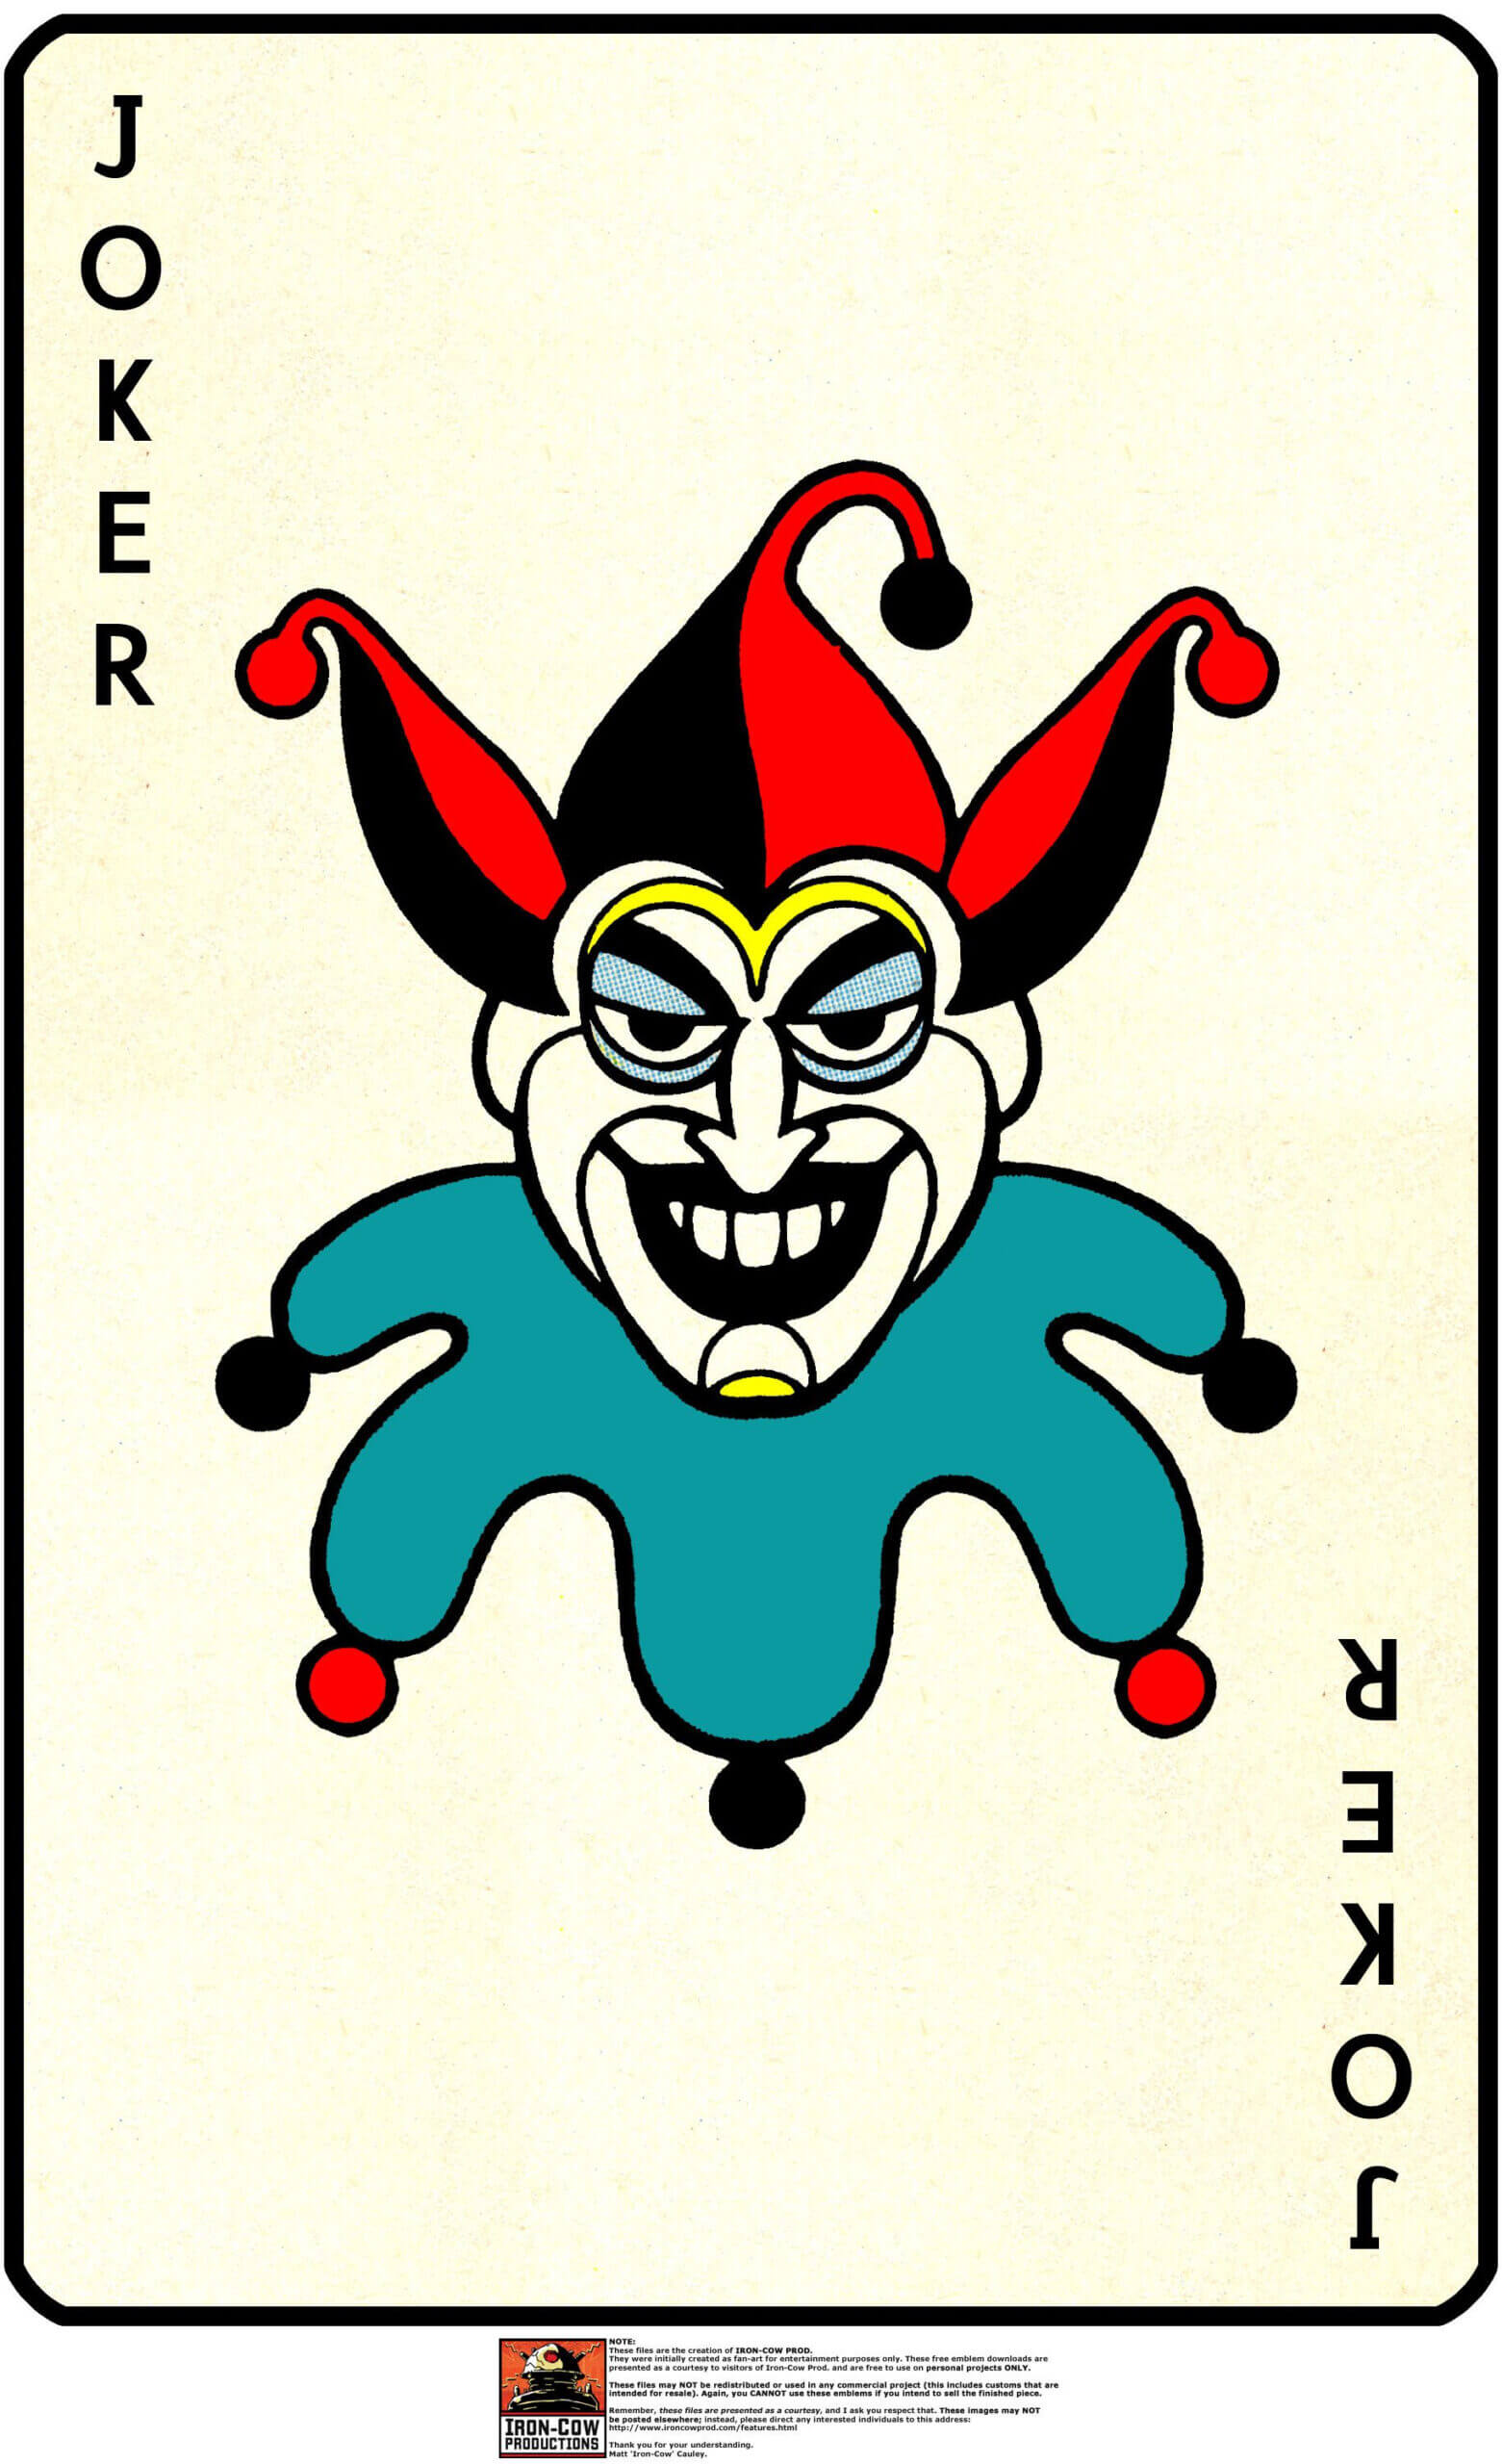 Joker Card Free Download Clip Art – Webcomicms Throughout Joker Card Template